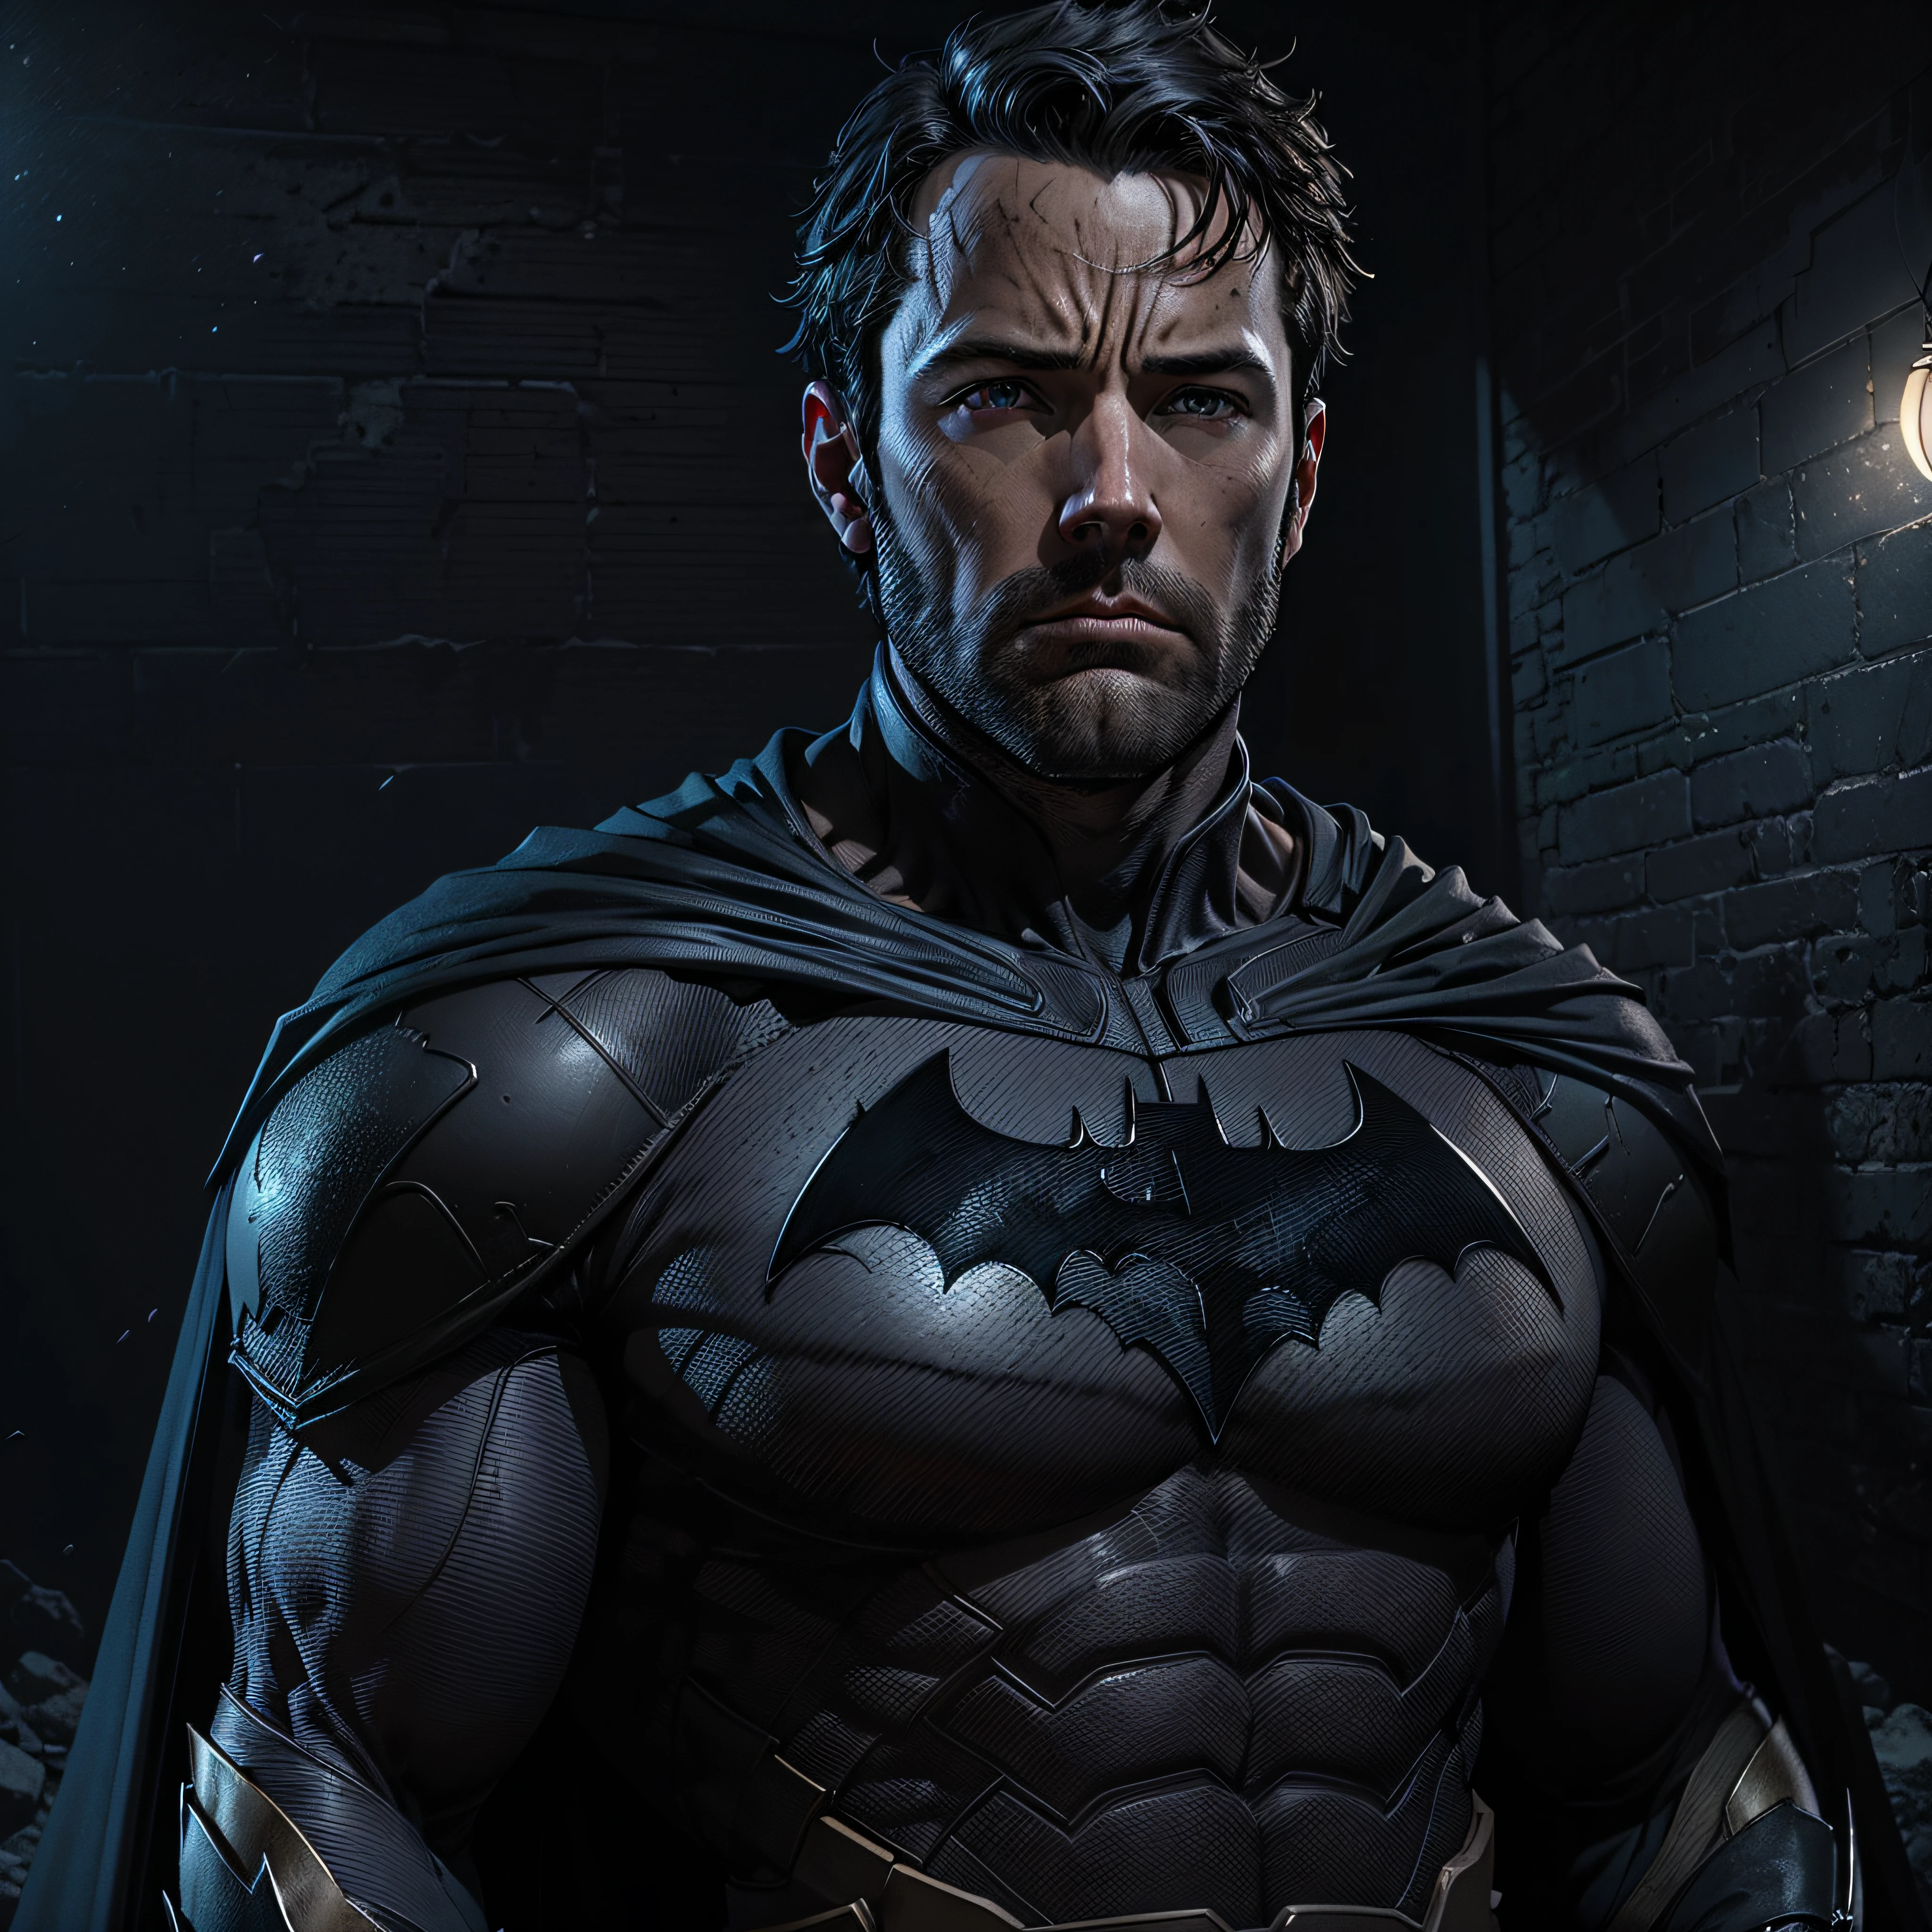 1 Mann, Allein, Ben Affleck as Batman, groß, hunk, muskulös, Schüttgut, breite Schulter, Fotorealismus, dunkelgrauer Anzug, dunkelgraue Arme, ((keine Maske)), Maske ab, Schwarzes Haar, schwarze Handschuhe, beste Qualität, Meisterwerk, hohe Auflösung:1.2, schwarzer Umhang, hochdetaillierte Maske, hochdetaillierter Anzug, hochdetailliertes Gesicht, preisgekrönt, Nachtzeit, eine dunkle Höhle im Hintergrund, drinnen, fotorealistisch, ultra-realistisch, octane render